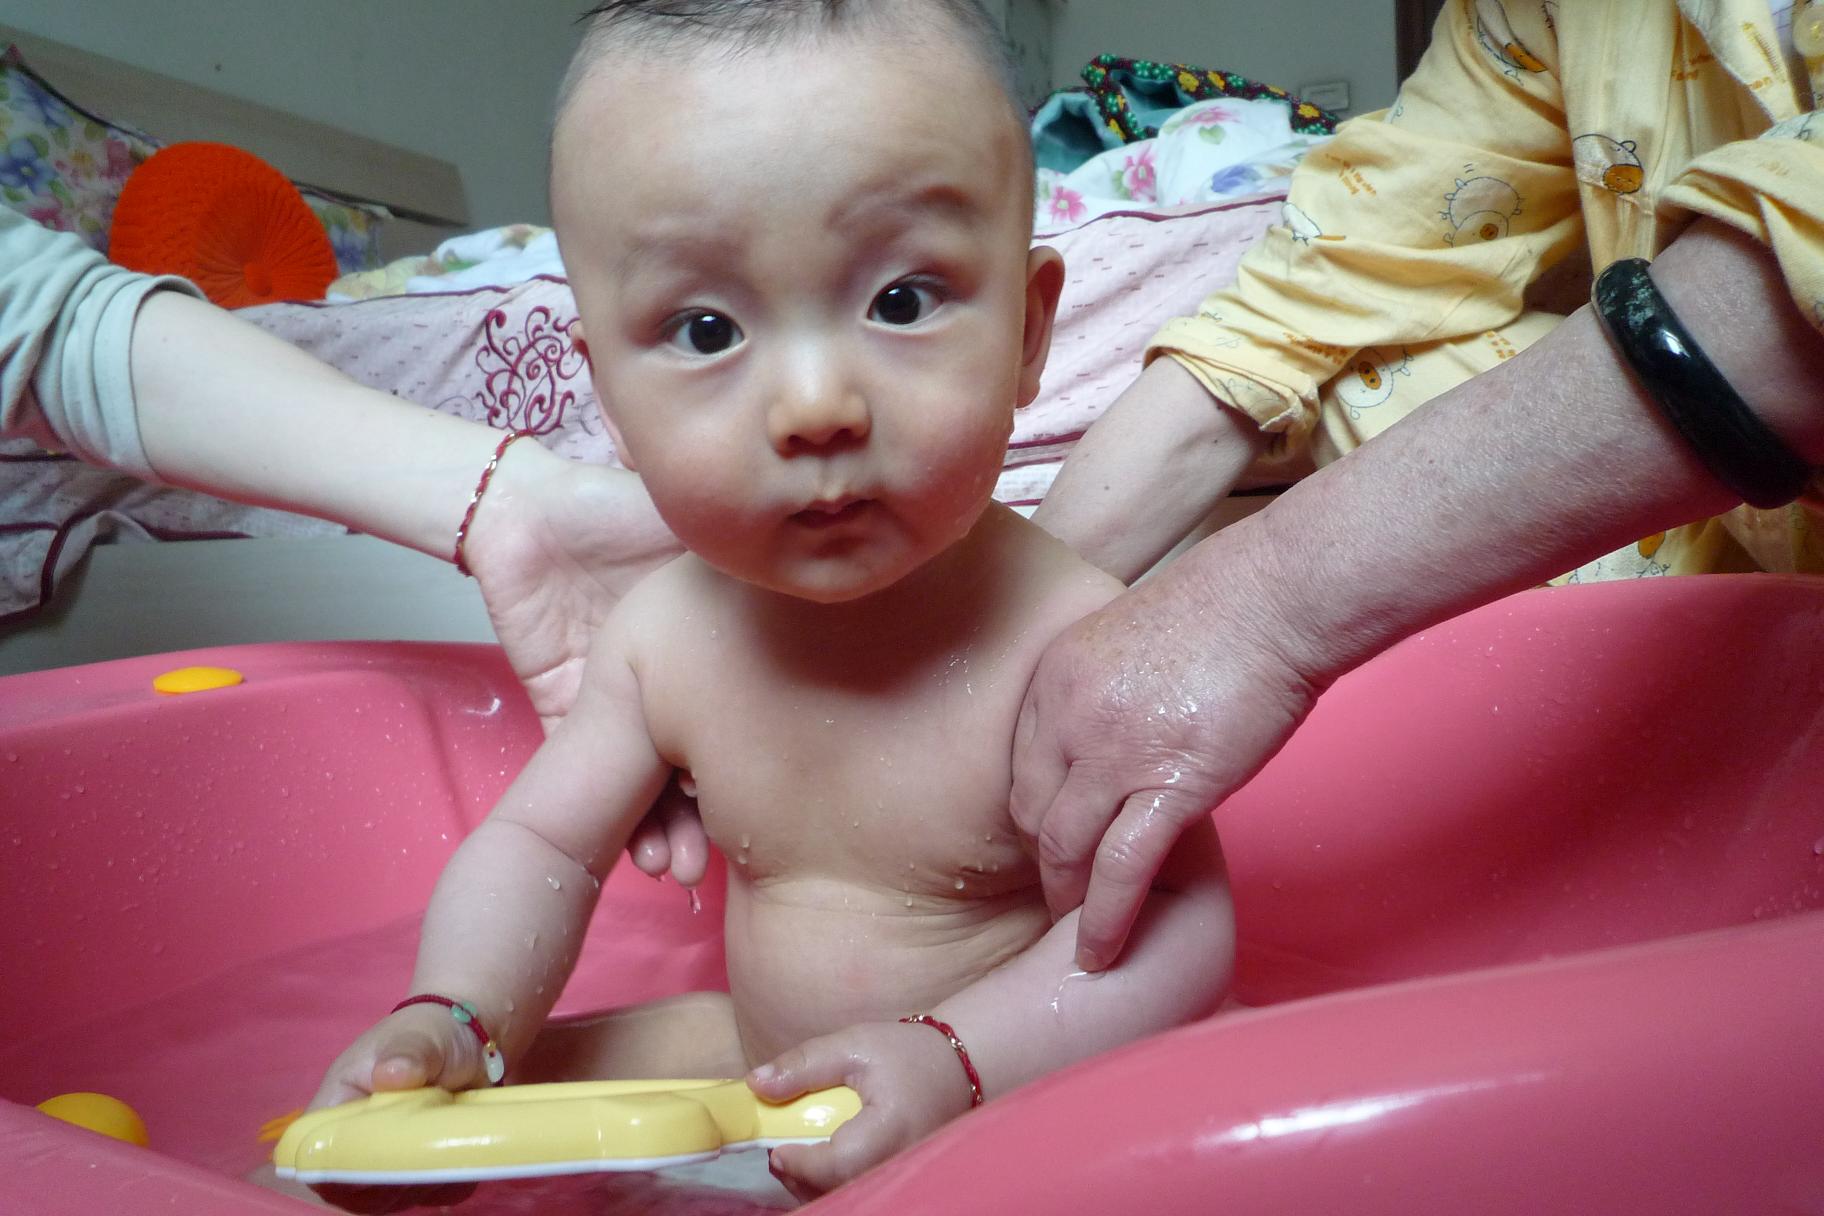 婴儿脸上湿疹是怎么引起的（婴儿为什么爱得湿疹）-幼儿百科-魔术铺